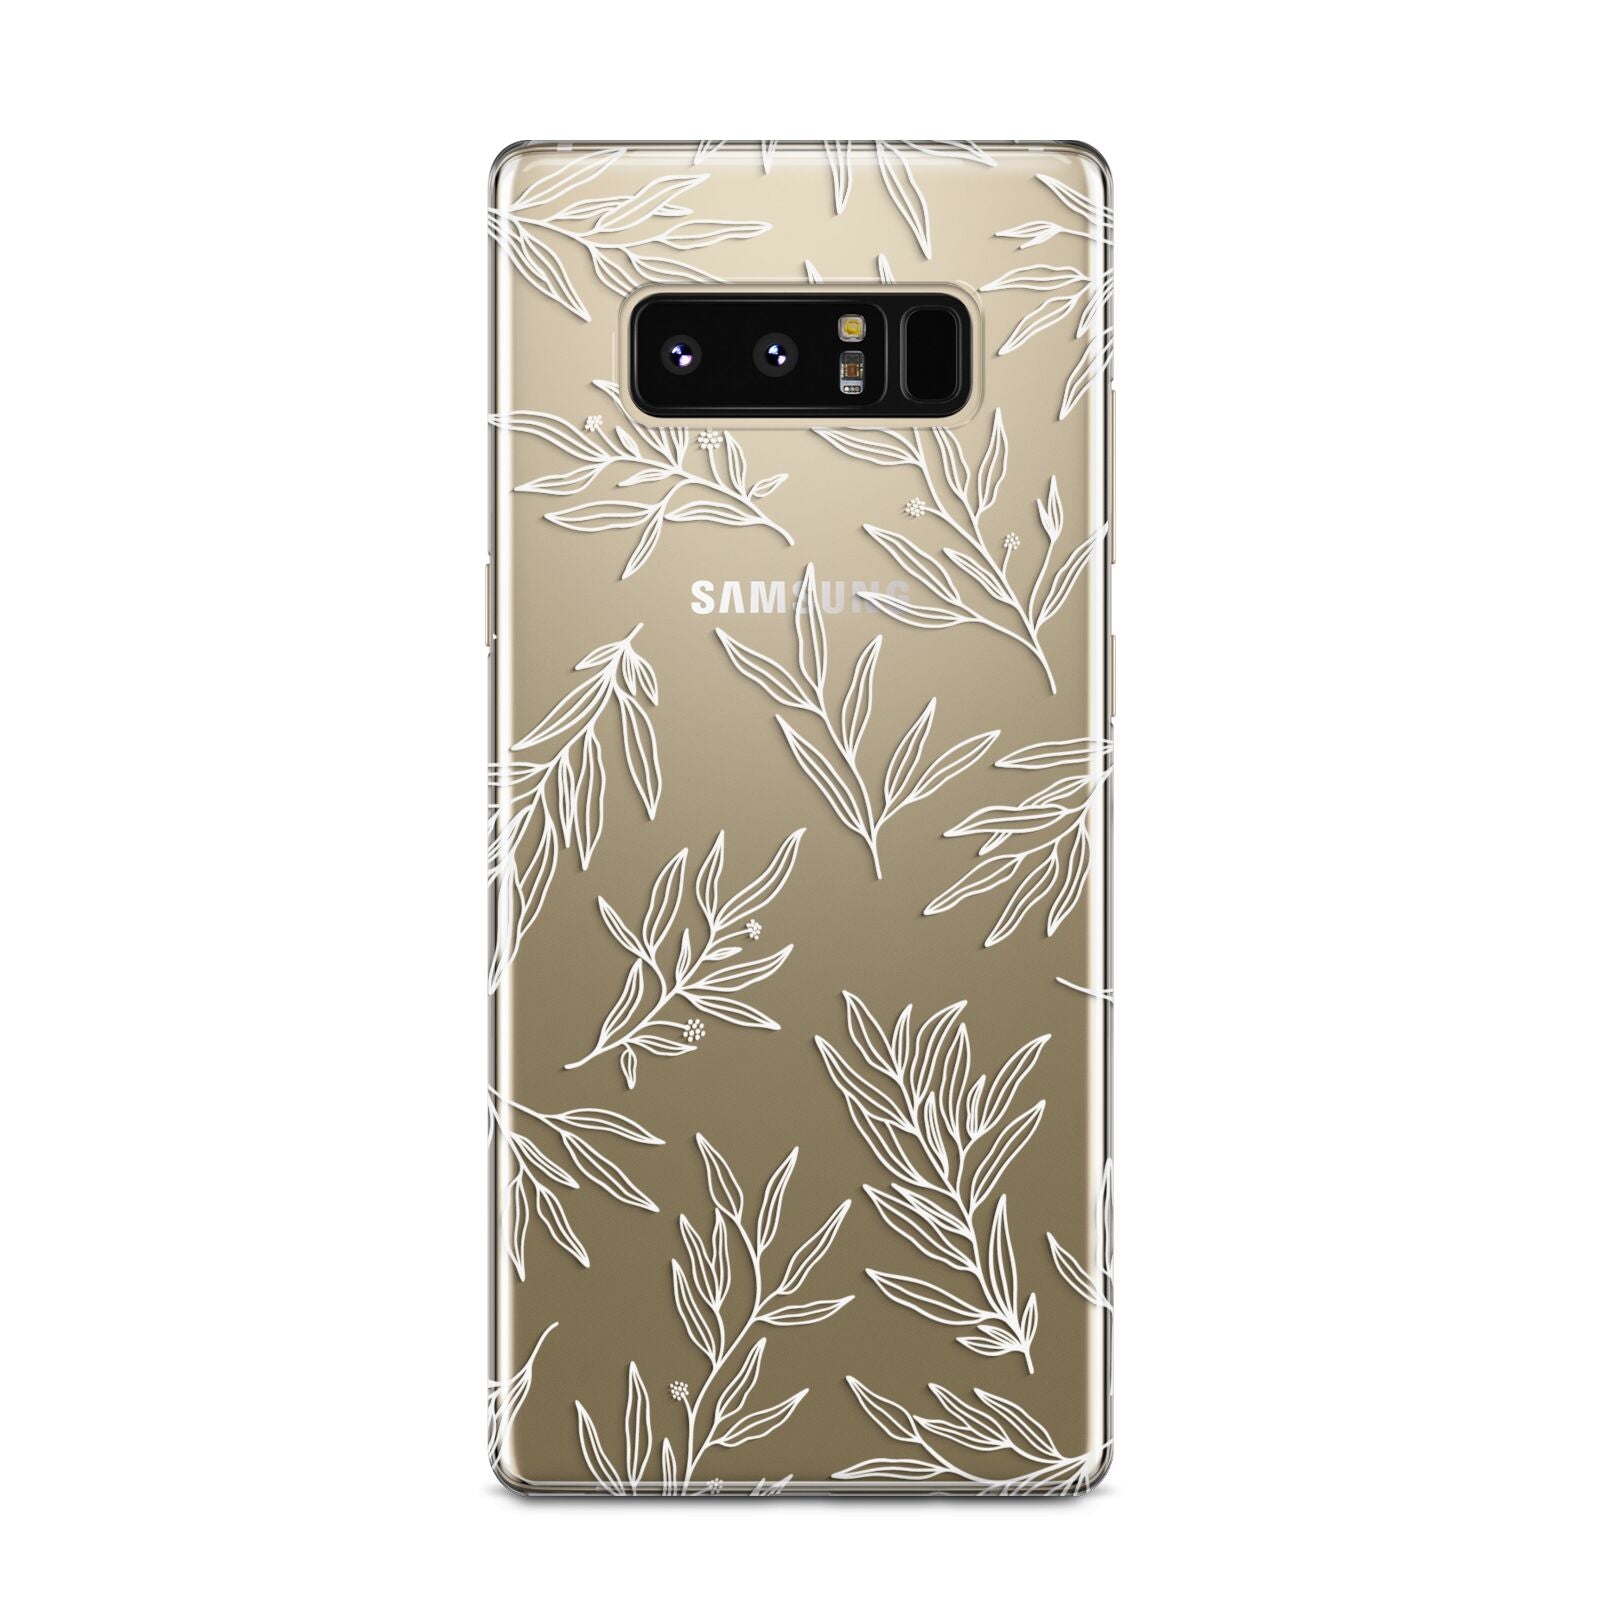 Botanical Leaf Samsung Galaxy Note 8 Case